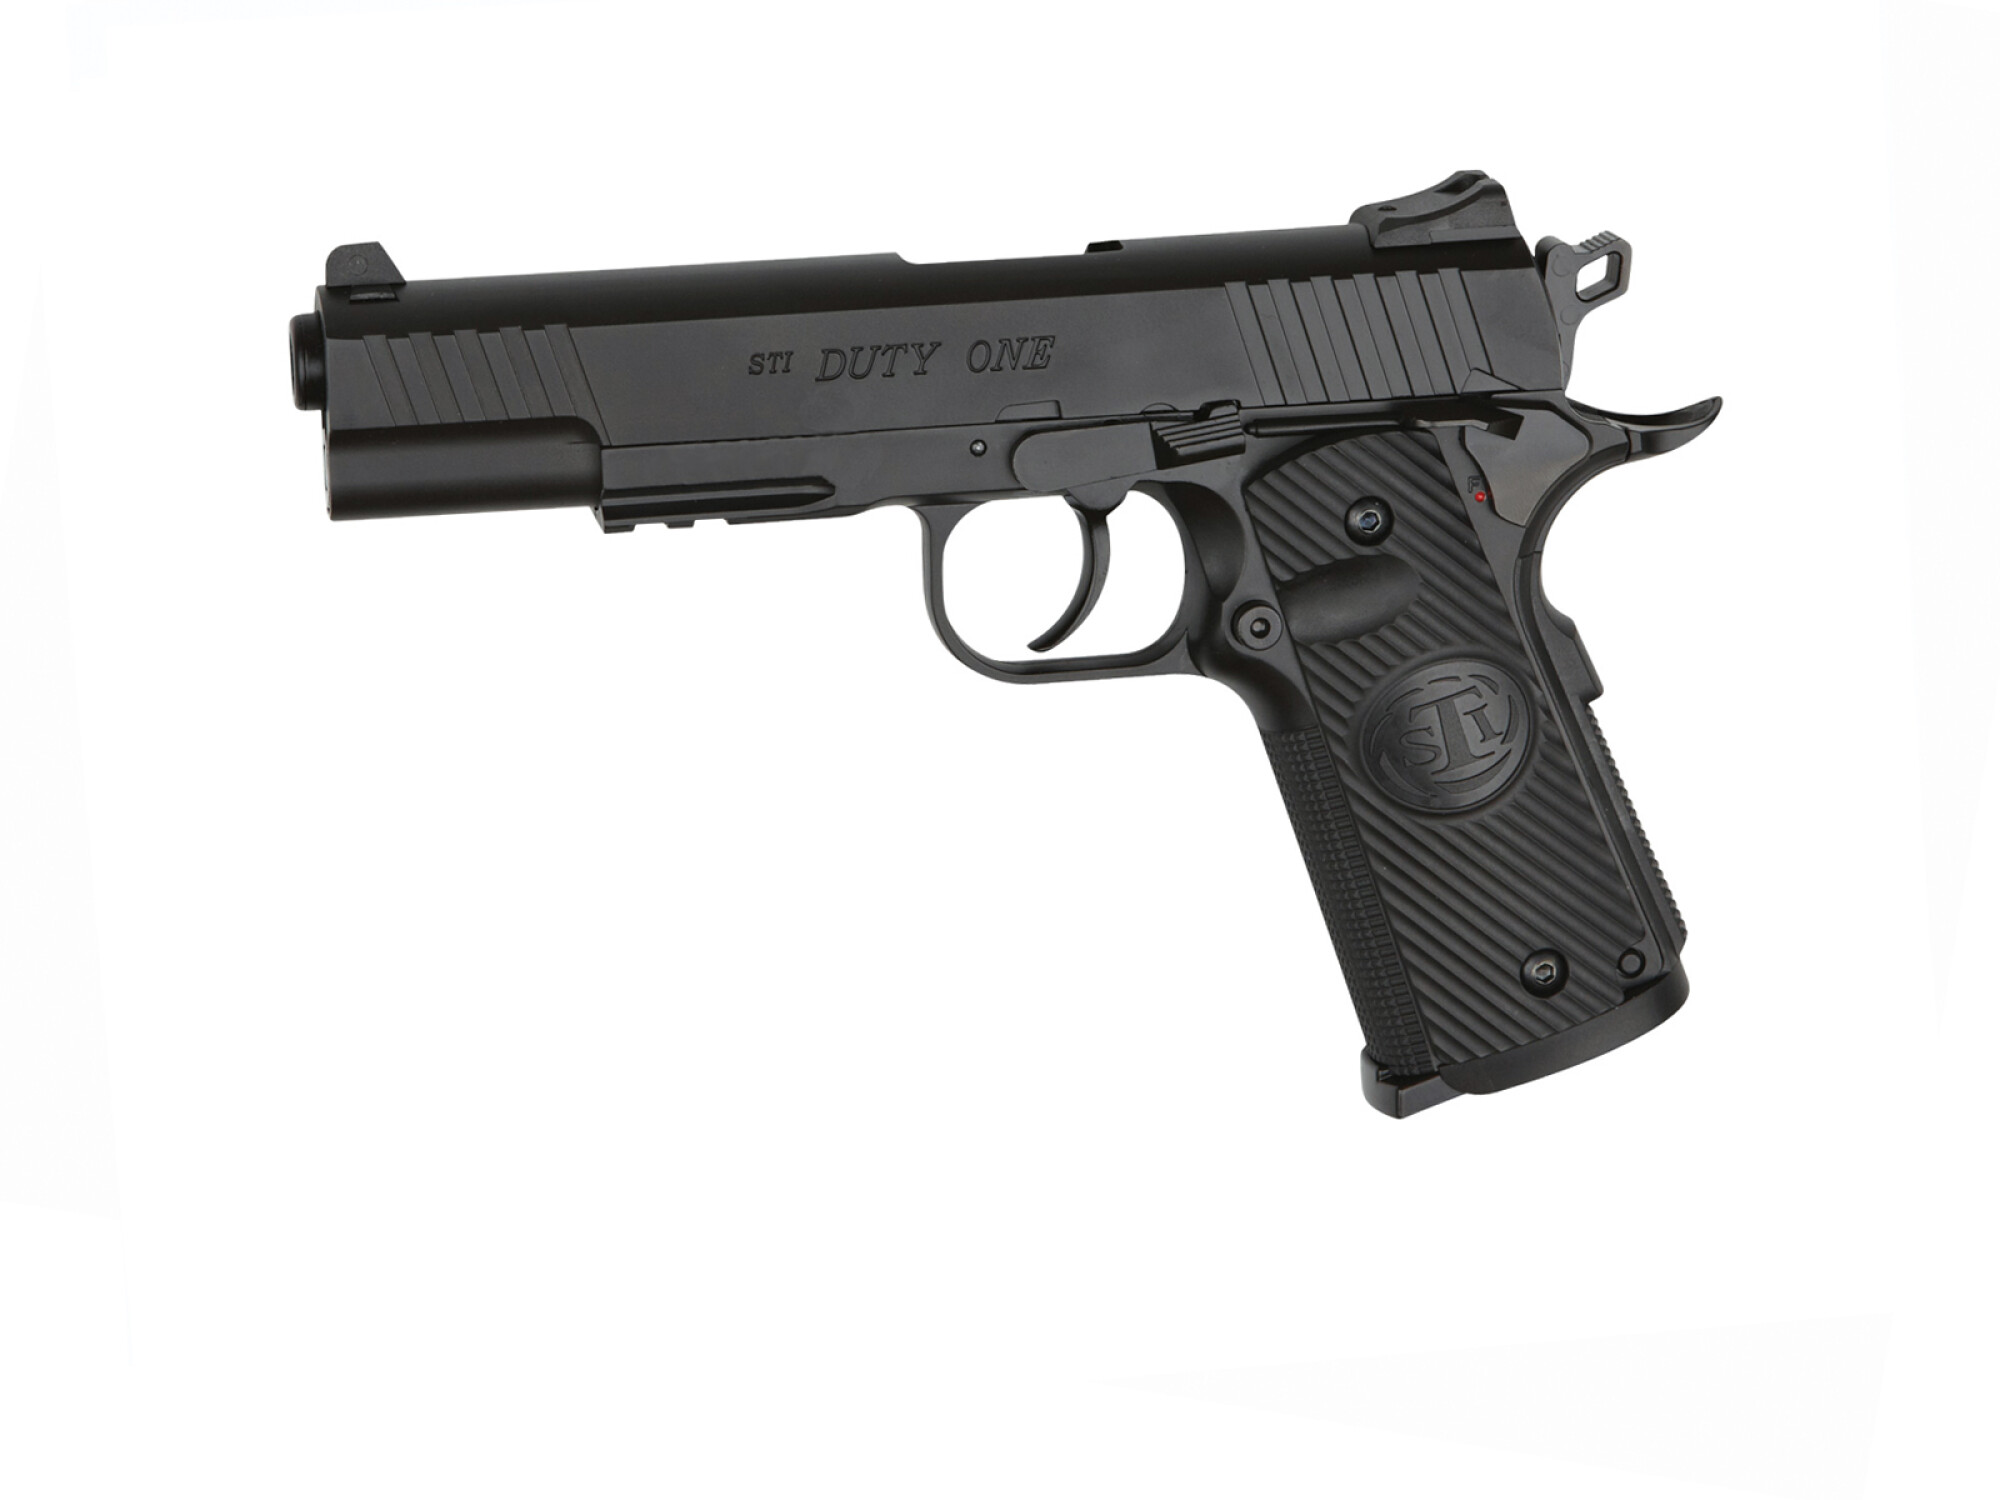 Silenciador ASG 150mm Pistola Metal Negro - Accesorios Airsoft